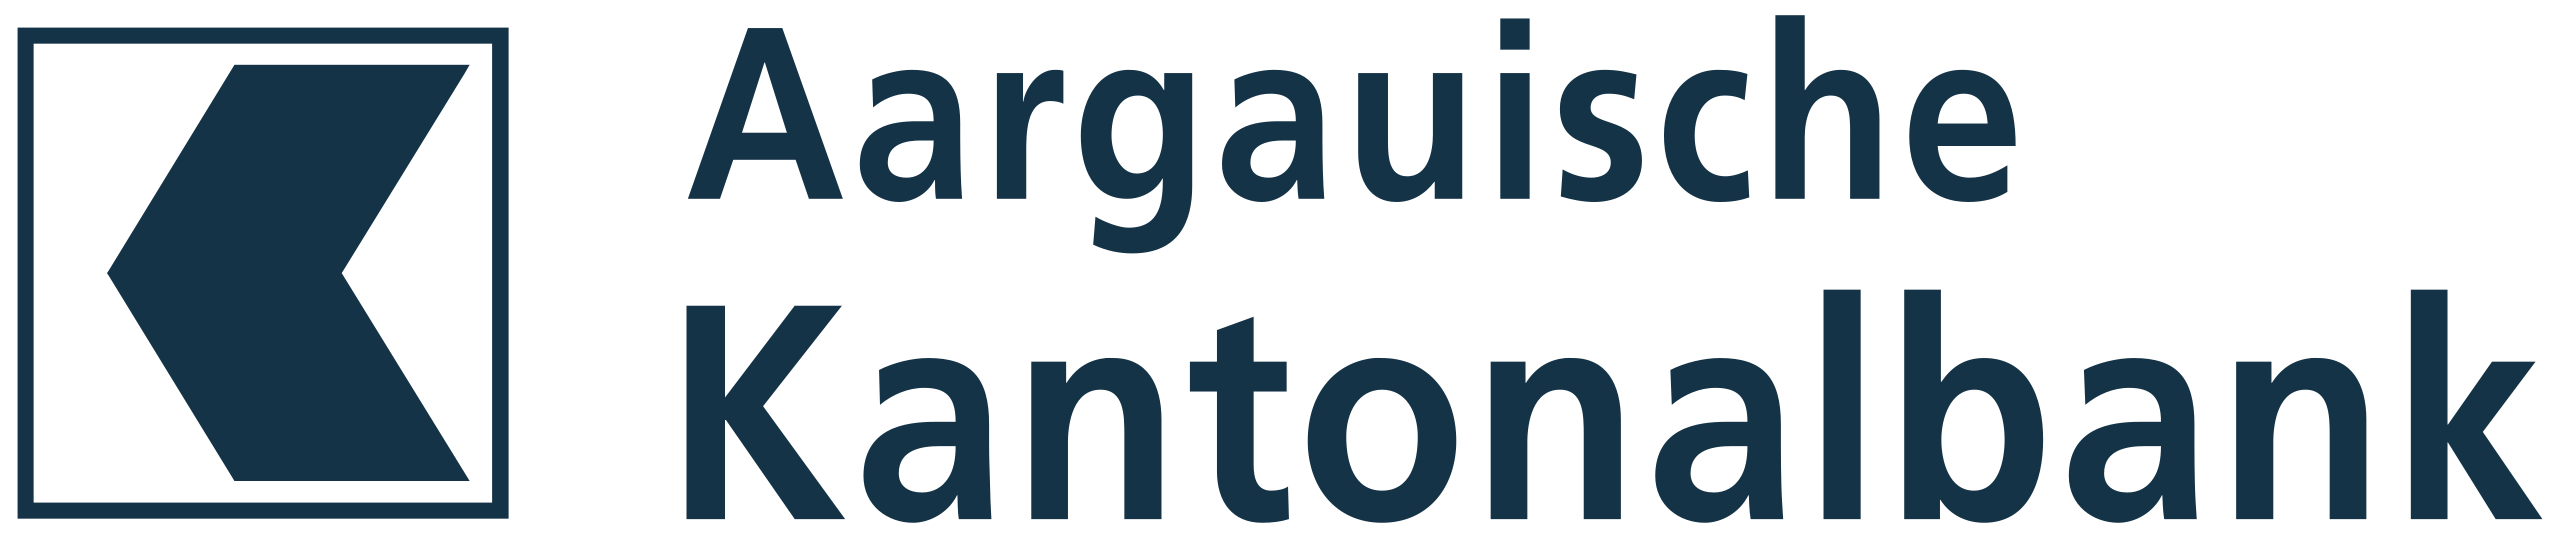 2560px-Aargauische_Kantonalbank_logo.svg (2)